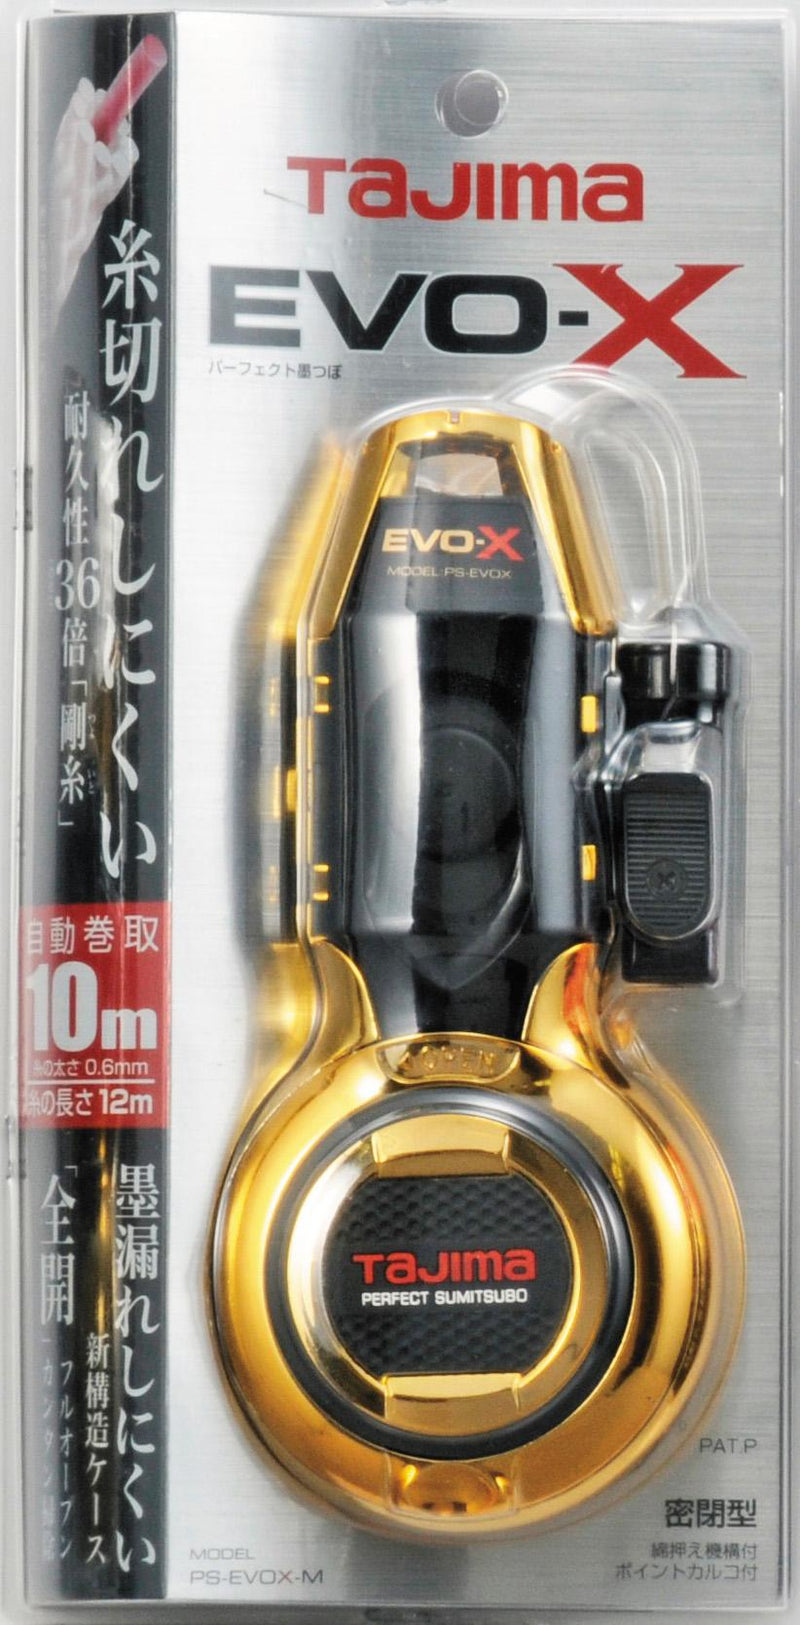 パーフェクト墨つぼ　EVOX-M 鶴首 剛糸 斜めカット 携帯用墨つぼ プロ用　PS-EVOX-M